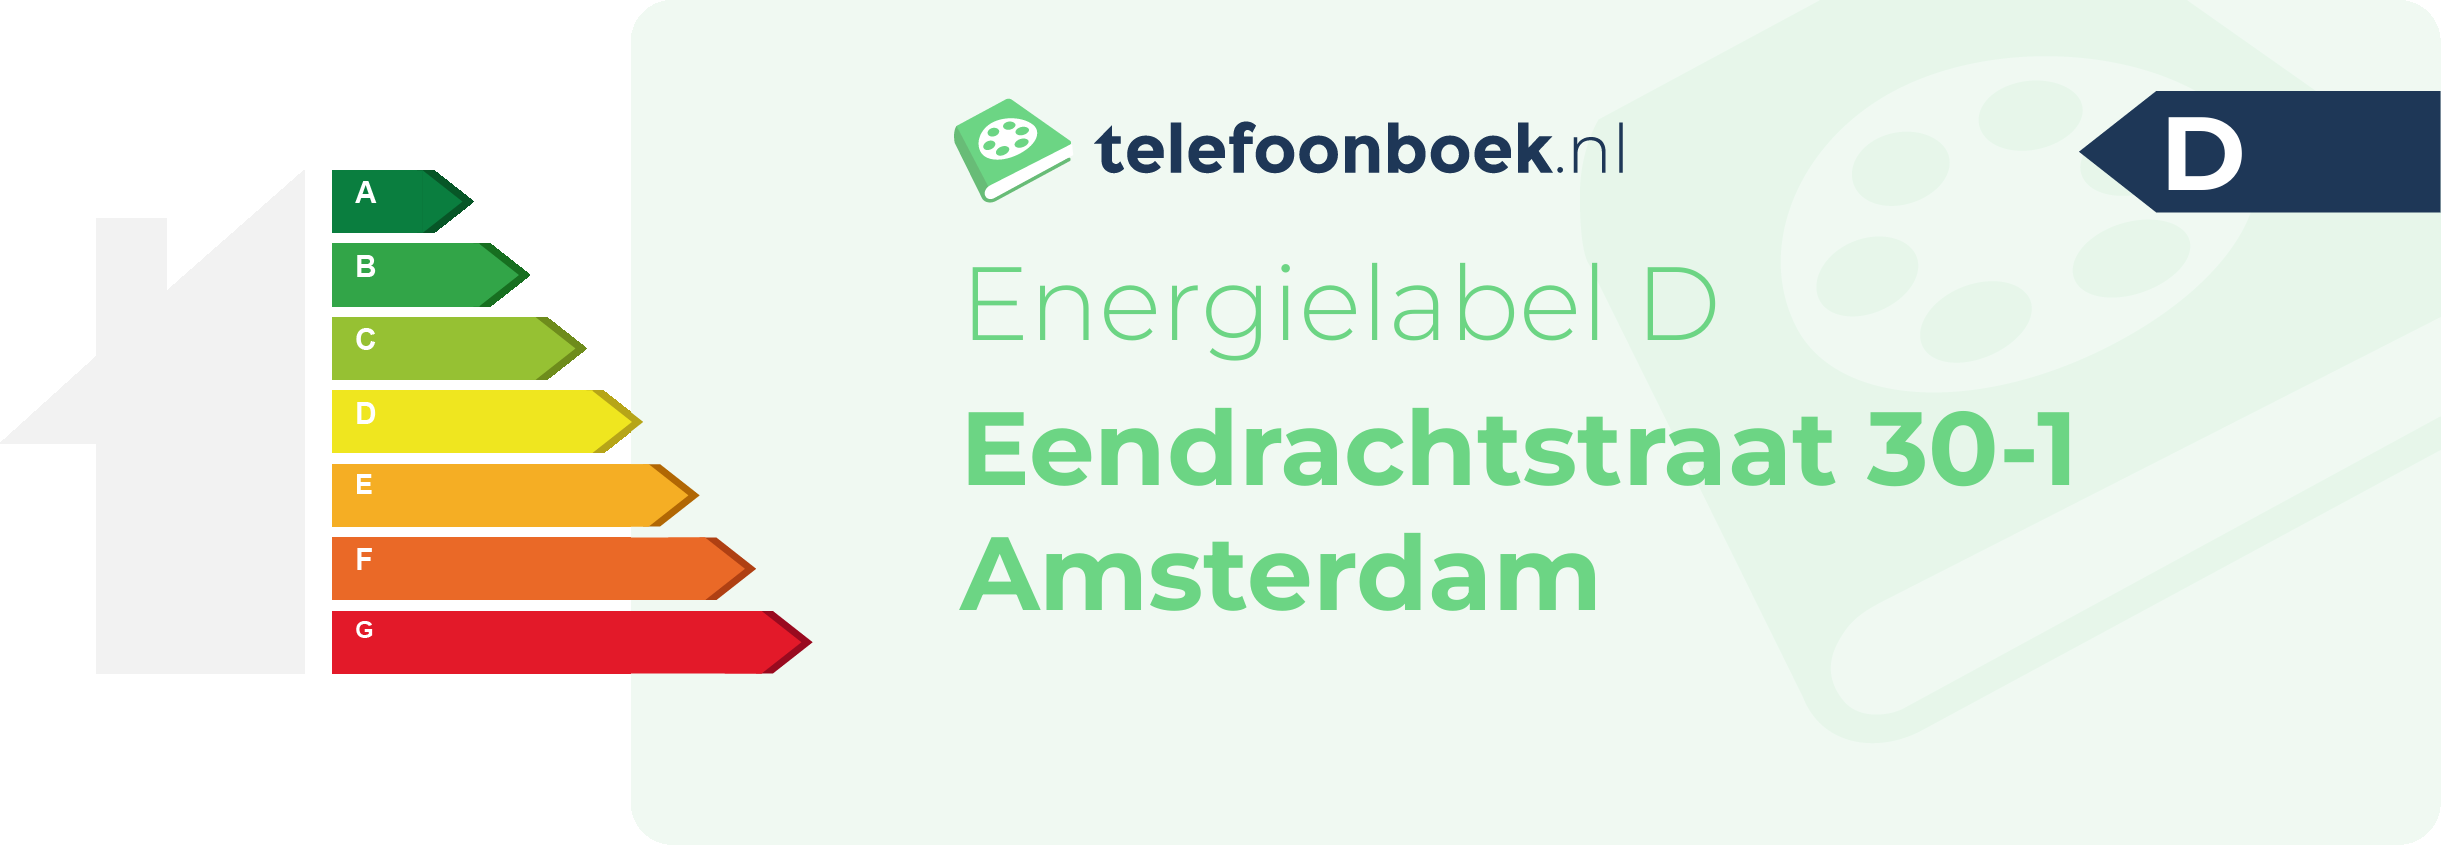 Energielabel Eendrachtstraat 30-1 Amsterdam